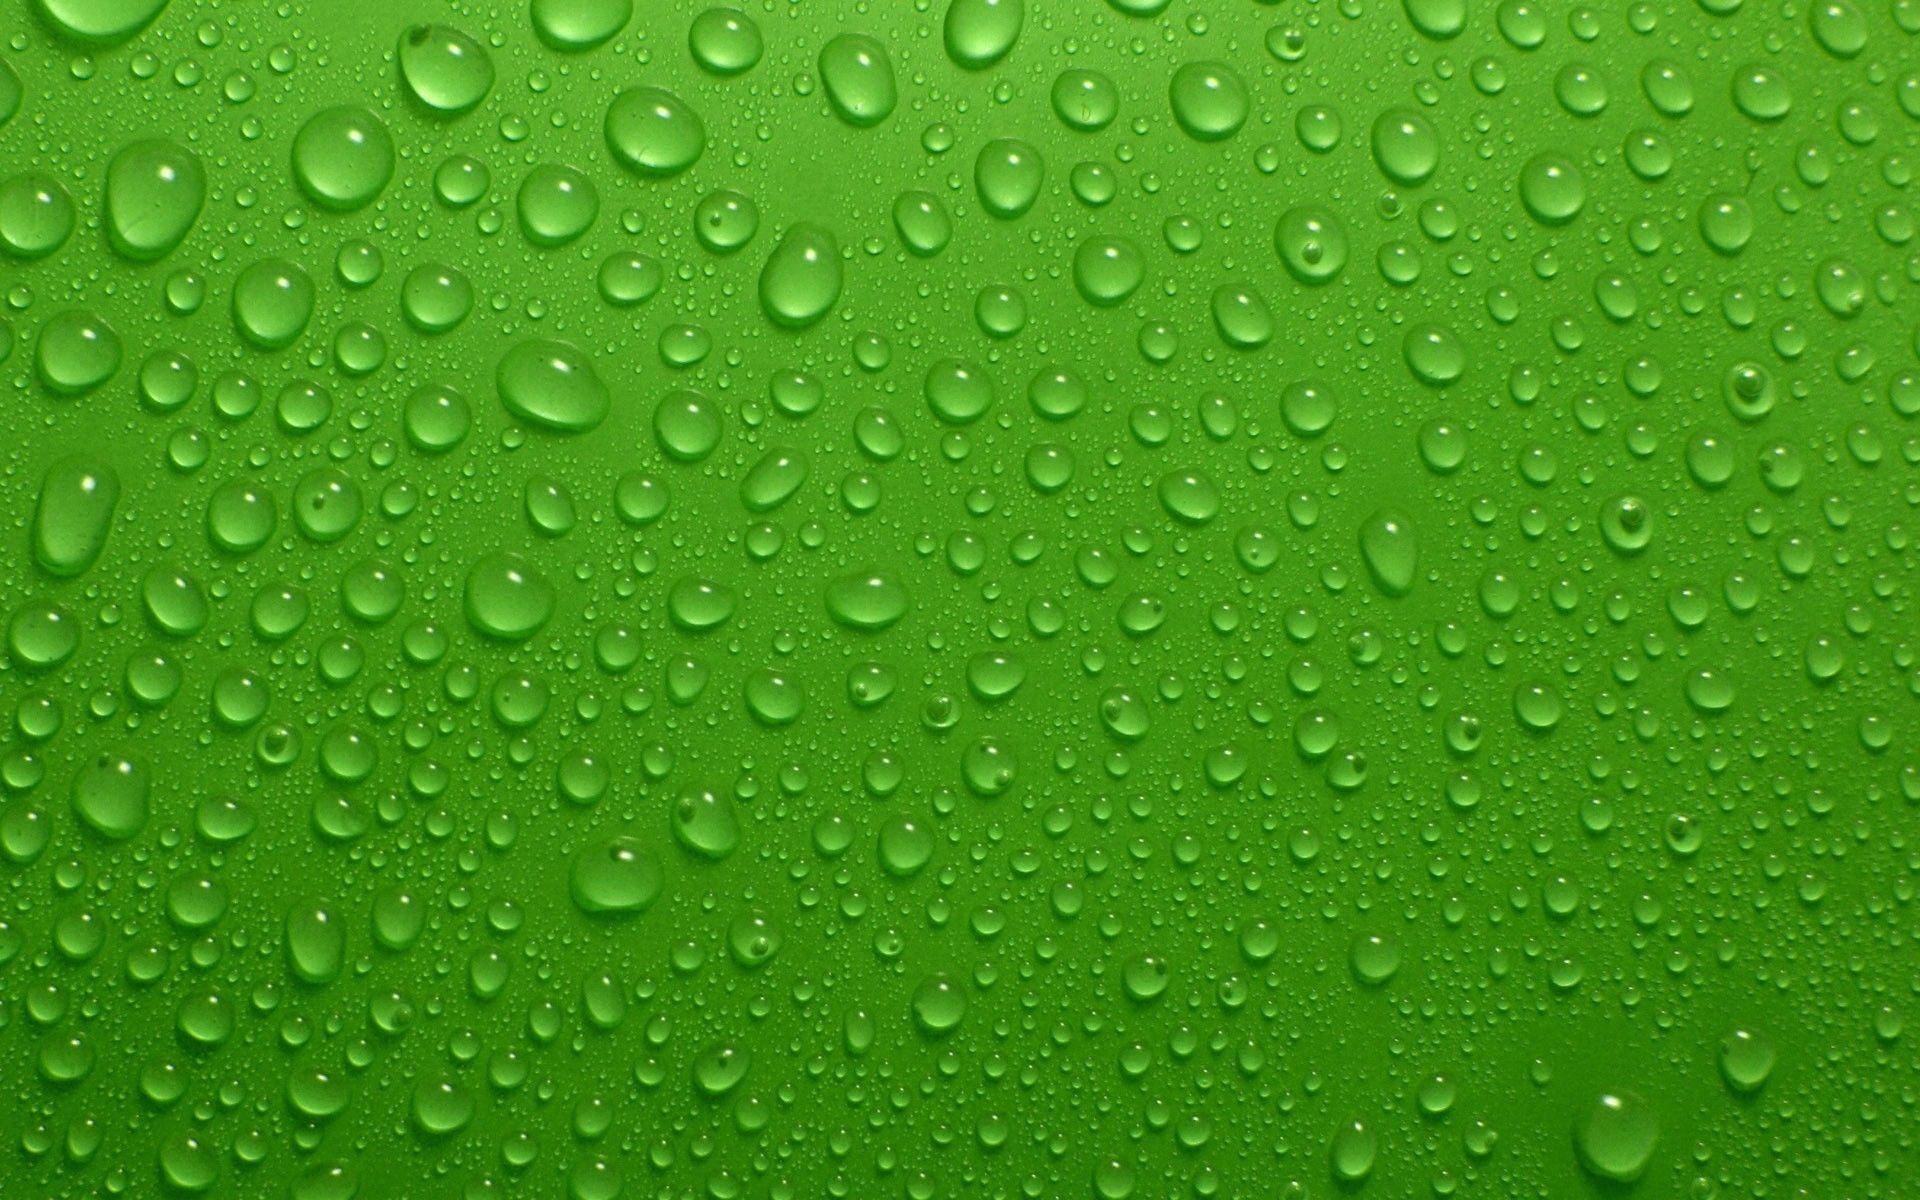 Dark Green Wallpaper 22 195686 Image HD Wallpaper. Wallfoy.com